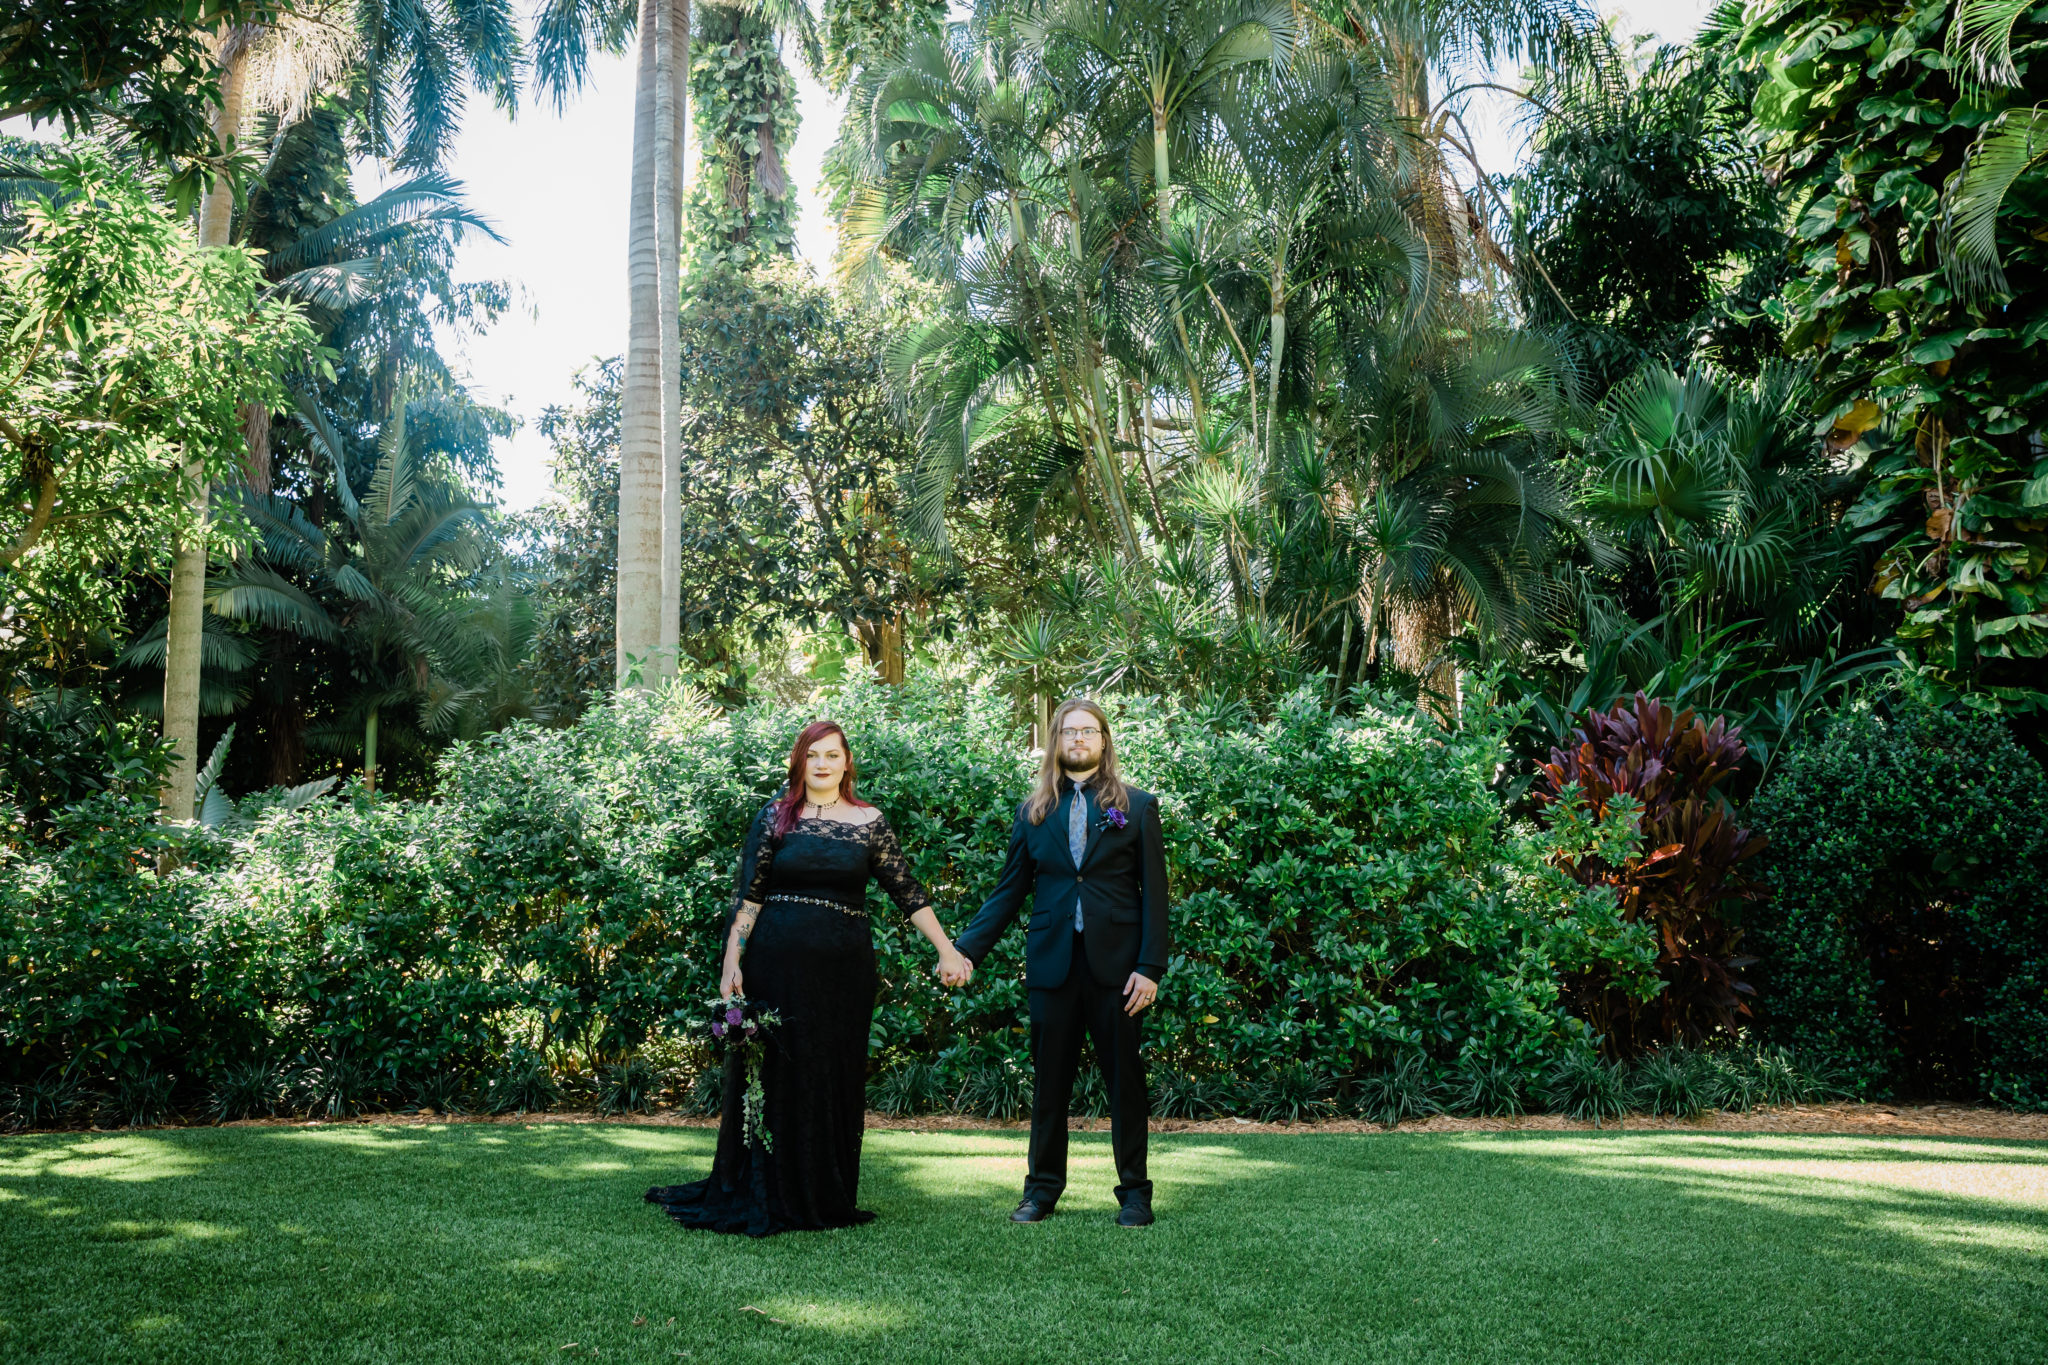 Sean and Erika's wedding at the Sunken Gardens St Petersburg Fl